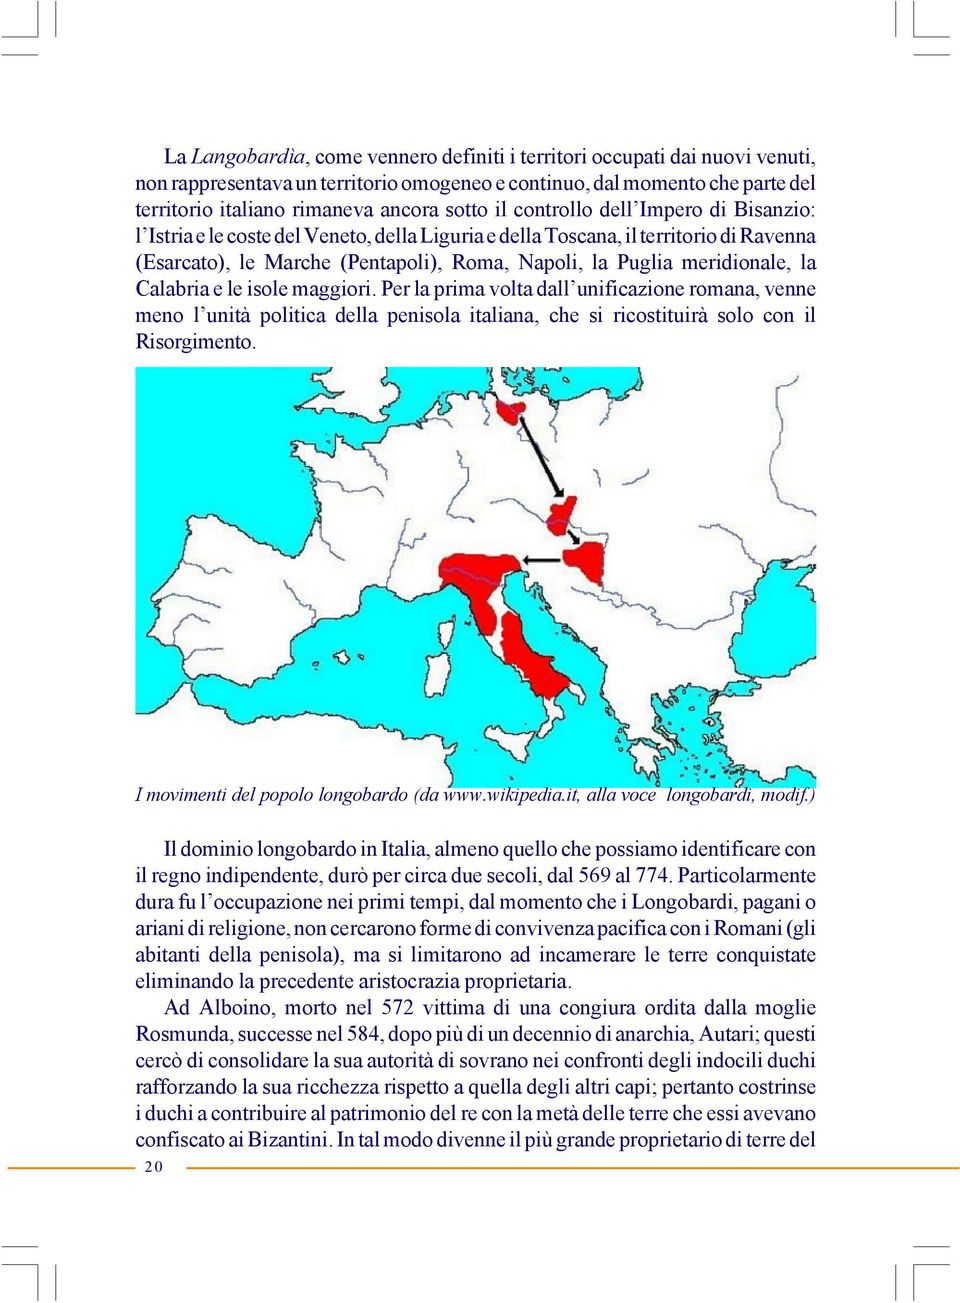 la Calabria e le isole maggiori. Per la prima volta dall unificazione romana, venne meno l unità politica della penisola italiana, che si ricostituirà solo con il Risorgimento.